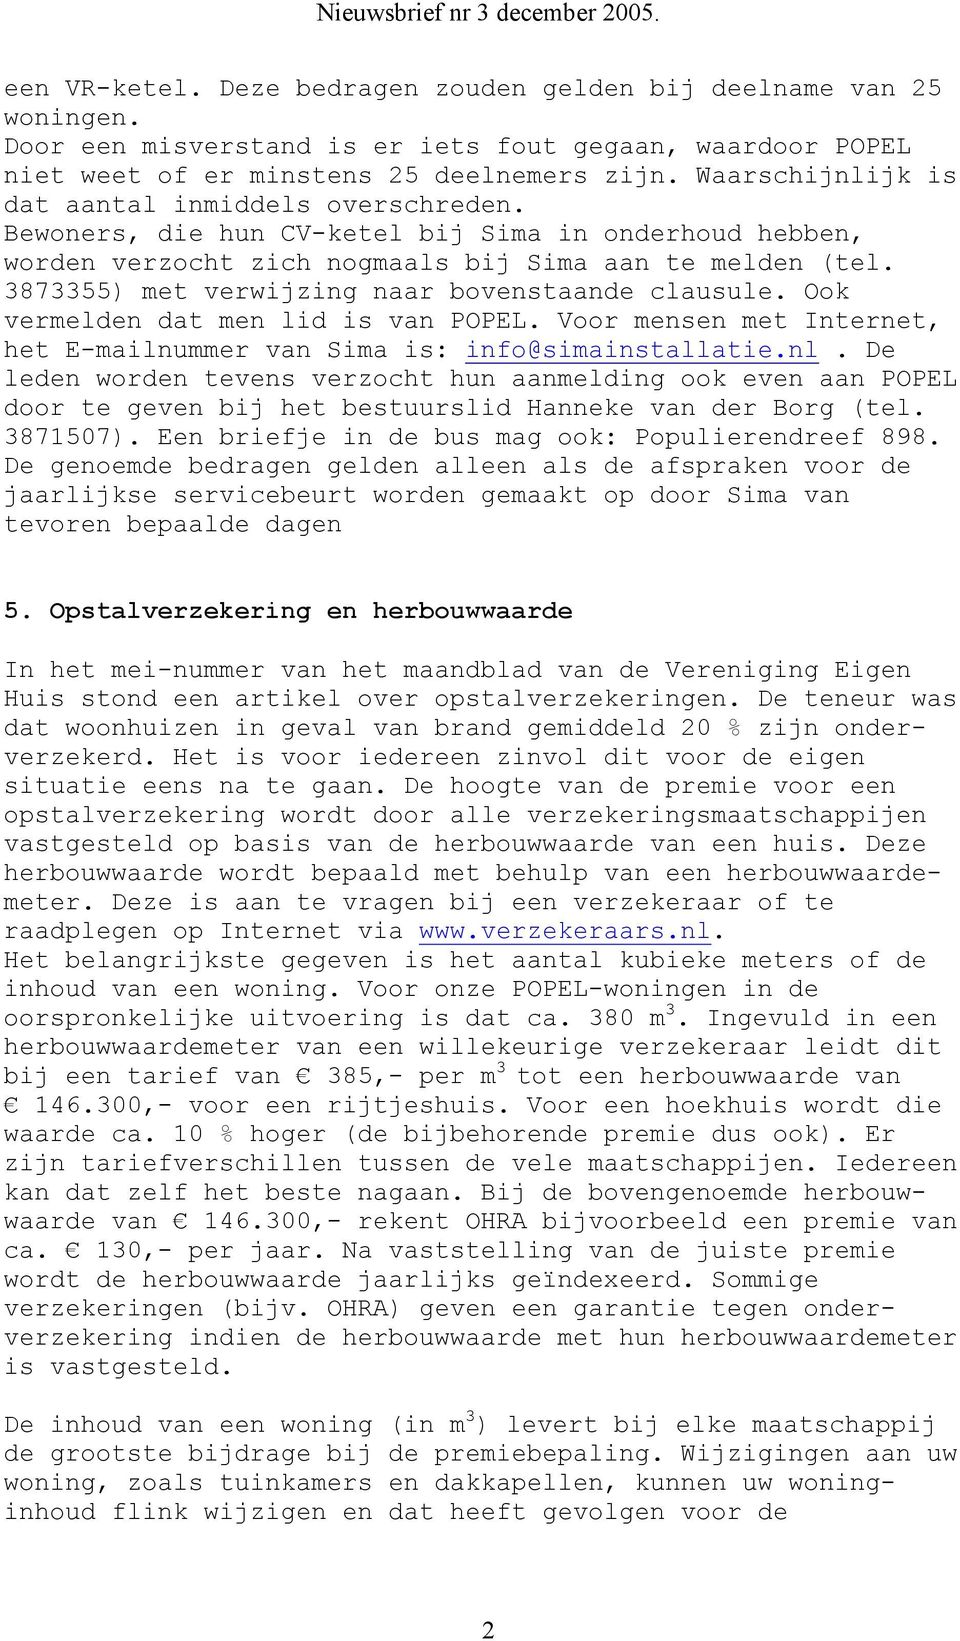 3873355) met verwijzing naar bovenstaande clausule. Ook vermelden dat men lid is van POPEL. Voor mensen met Internet, het E-mailnummer van Sima is: info@simainstallatie.nl.